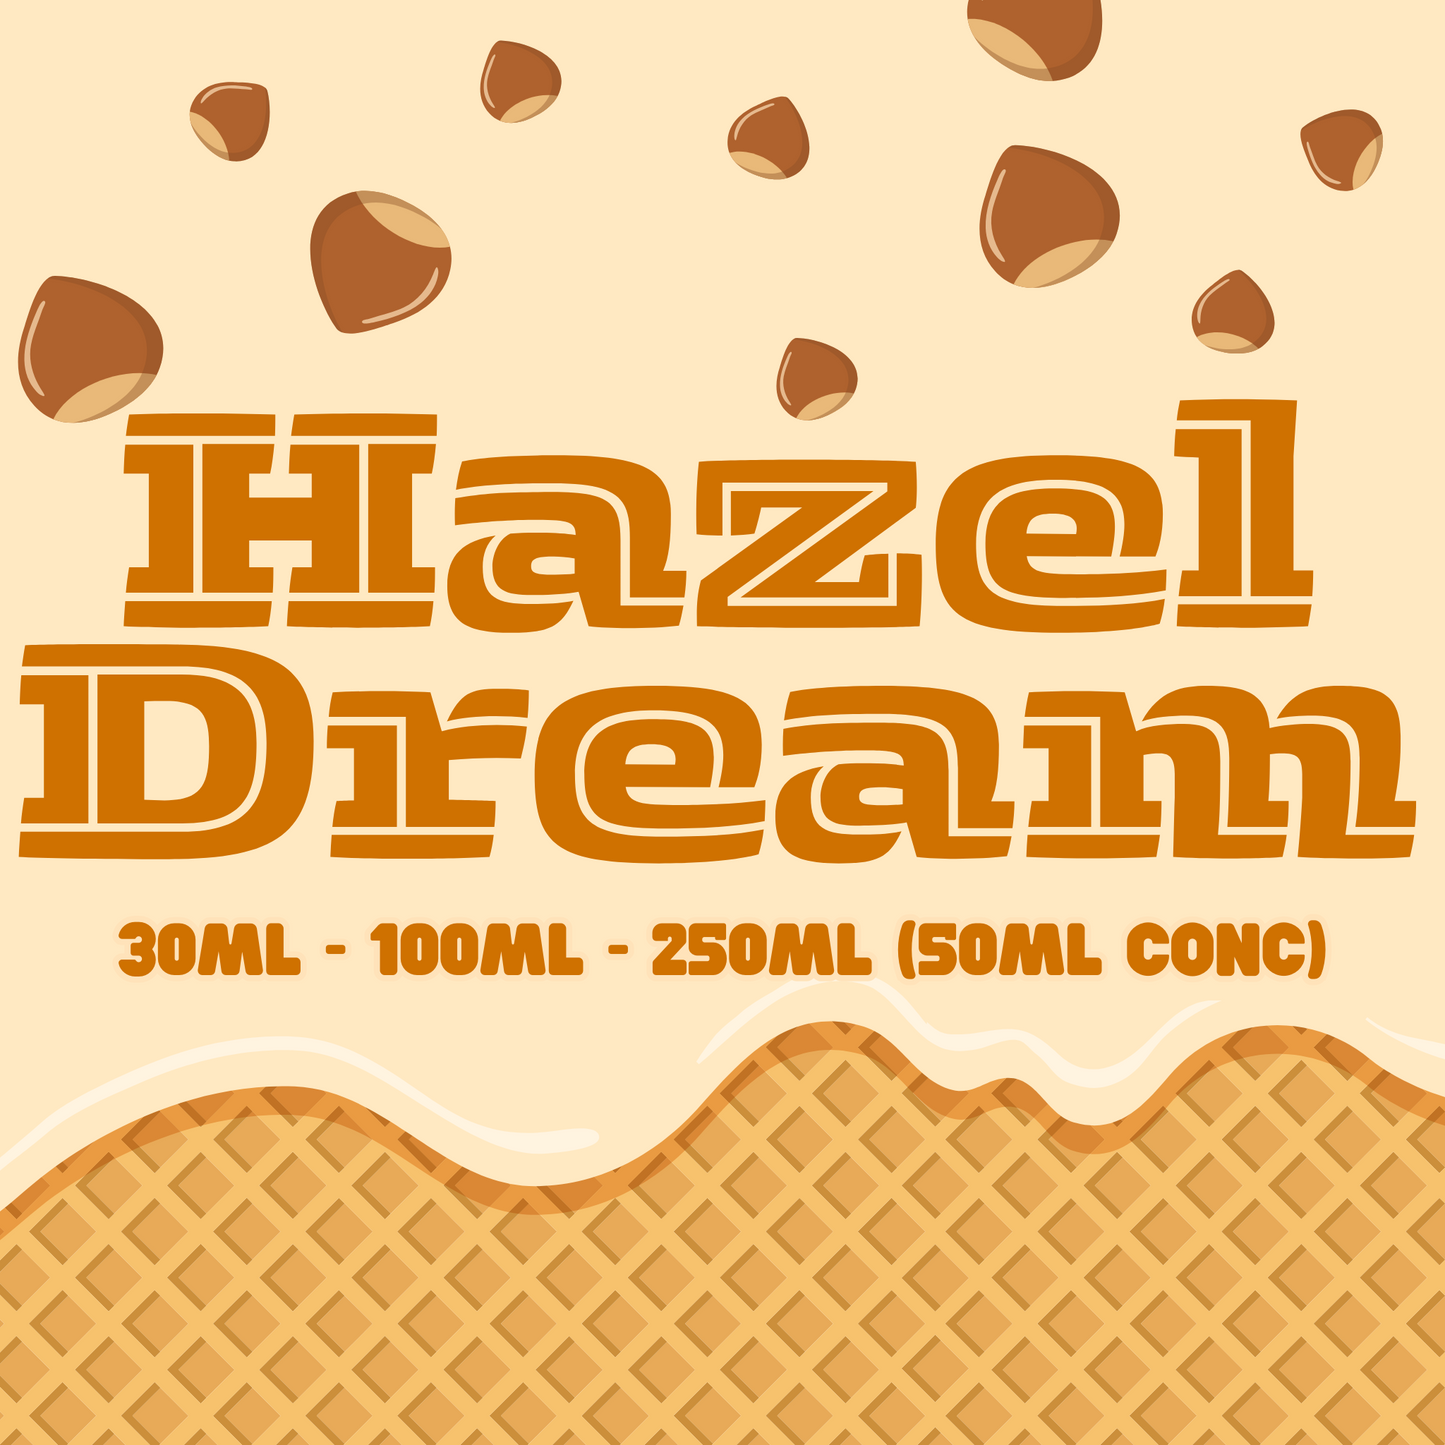 Hazel Dream - Flavour Craver